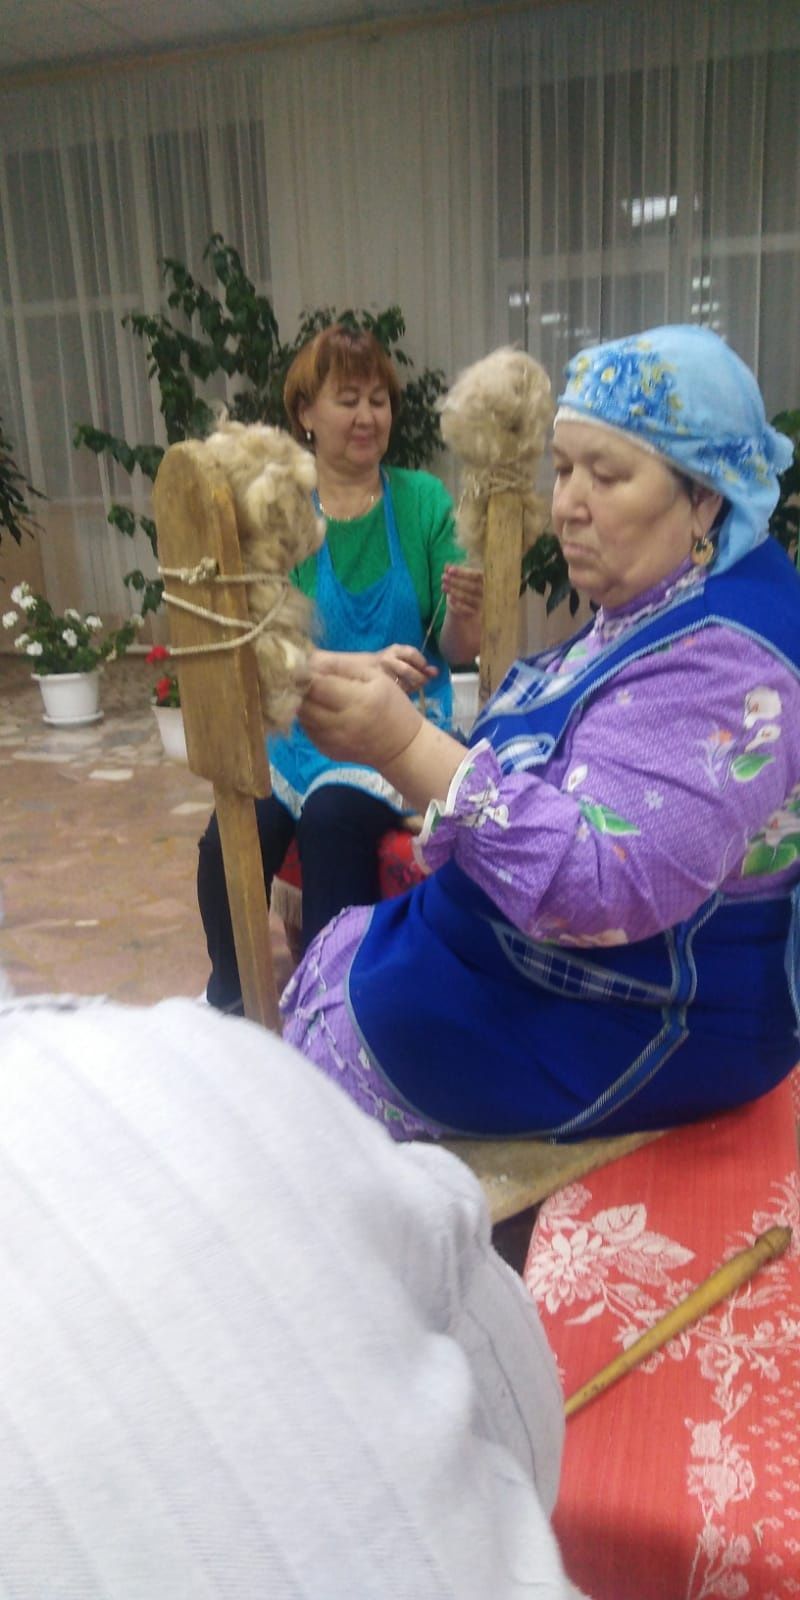 92-летняя бабушка Энже, тихонько напевая, вяжет носки